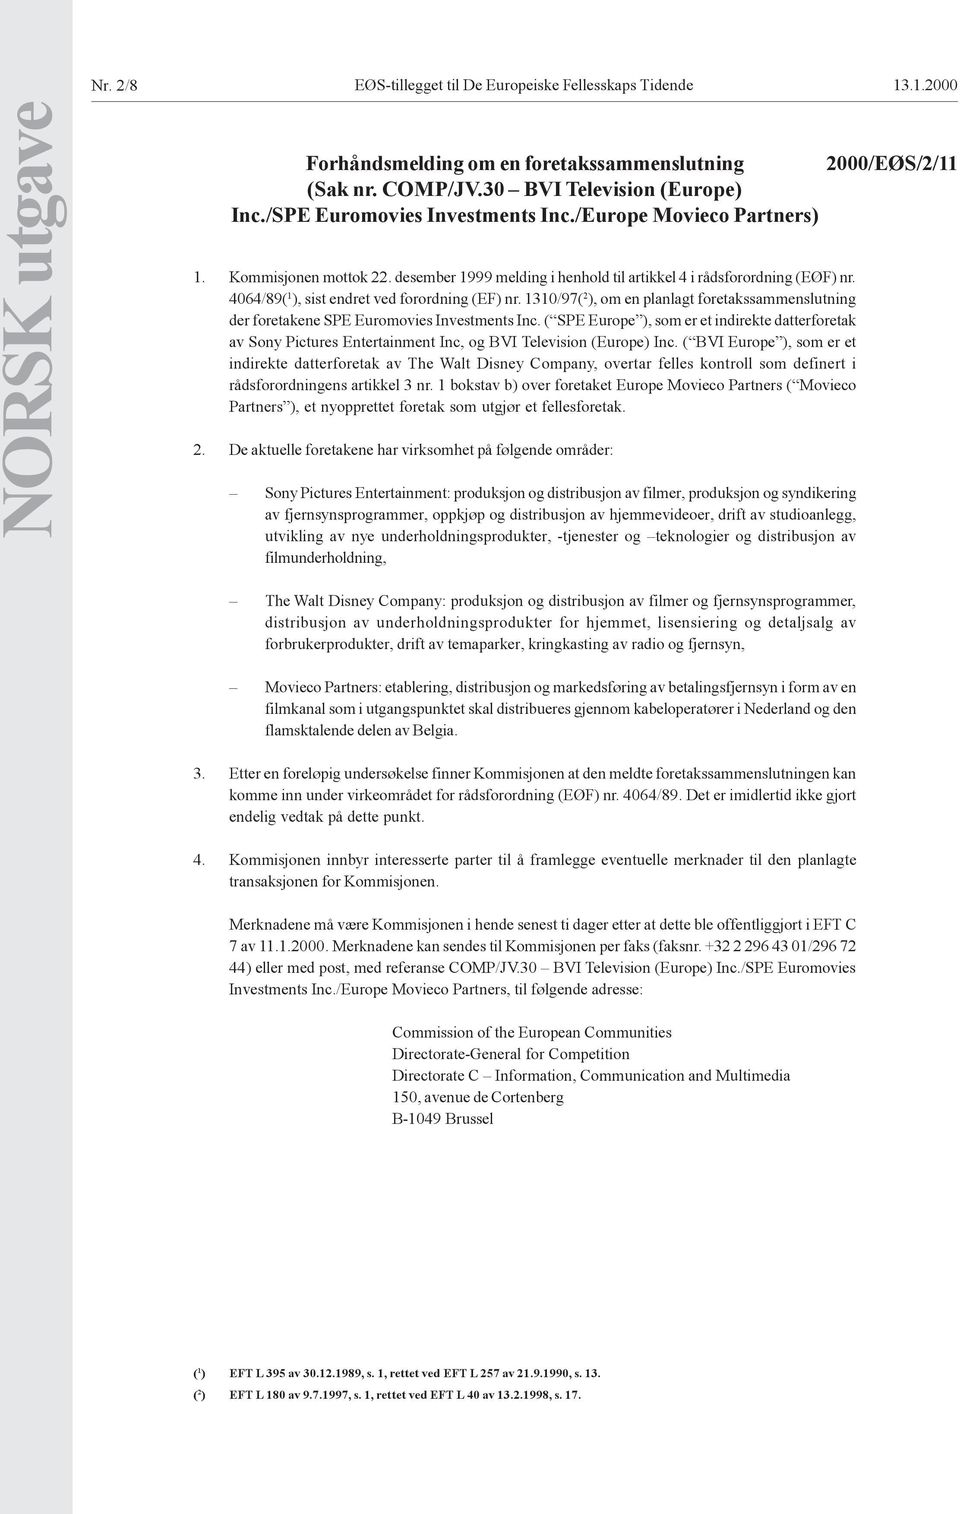 1310/97( 2 ), om en planlagt foretakssammenslutning der foretakene SPE Euromovies Investments Inc.